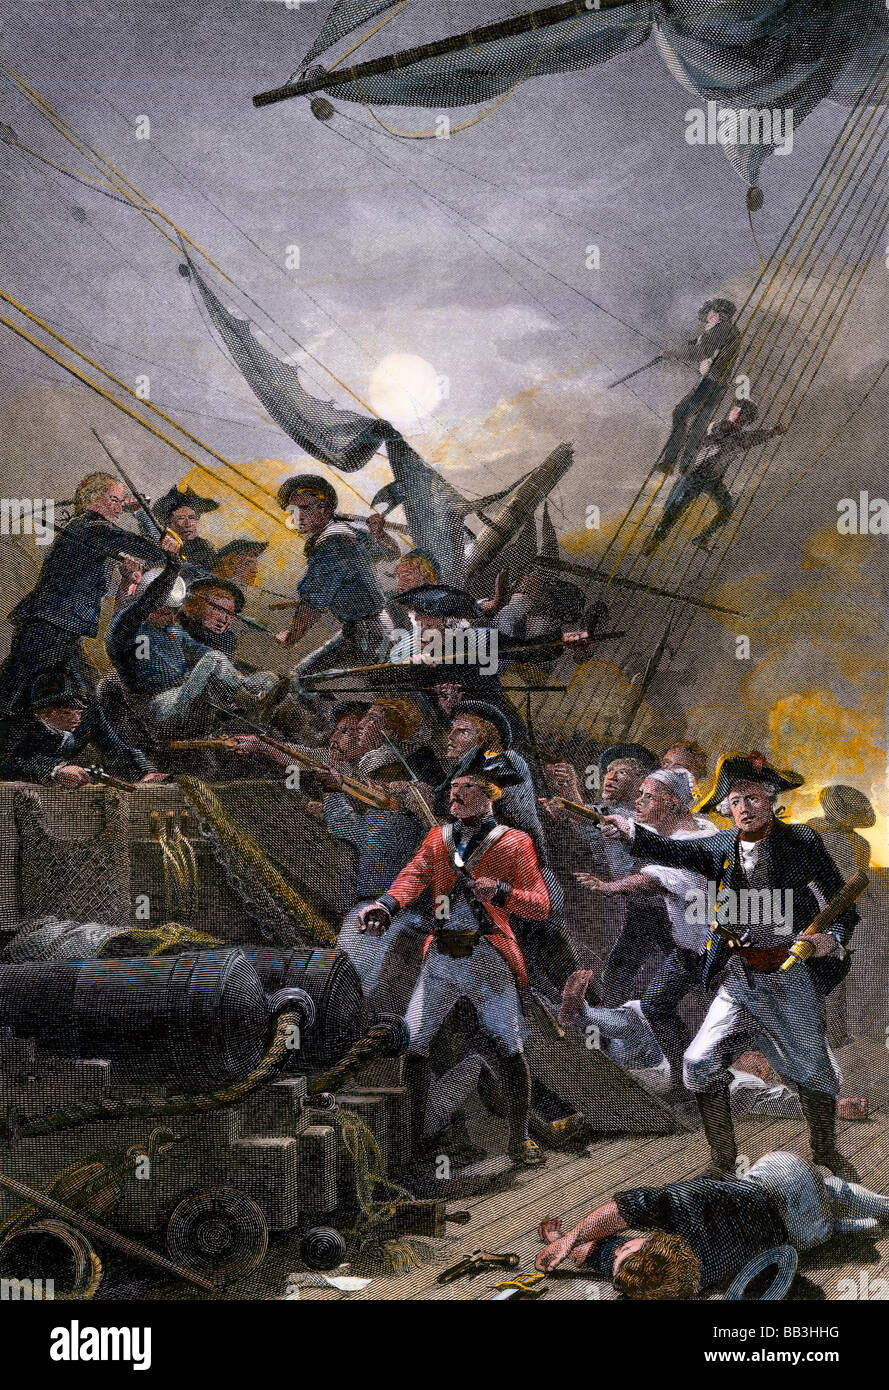 Amerikanische Seeleute aus dem Bonhomme Richard Erfassung der britischen Schiff Serapis revolutionären Krieg. Handcolorierte Stahlstich Stockfoto